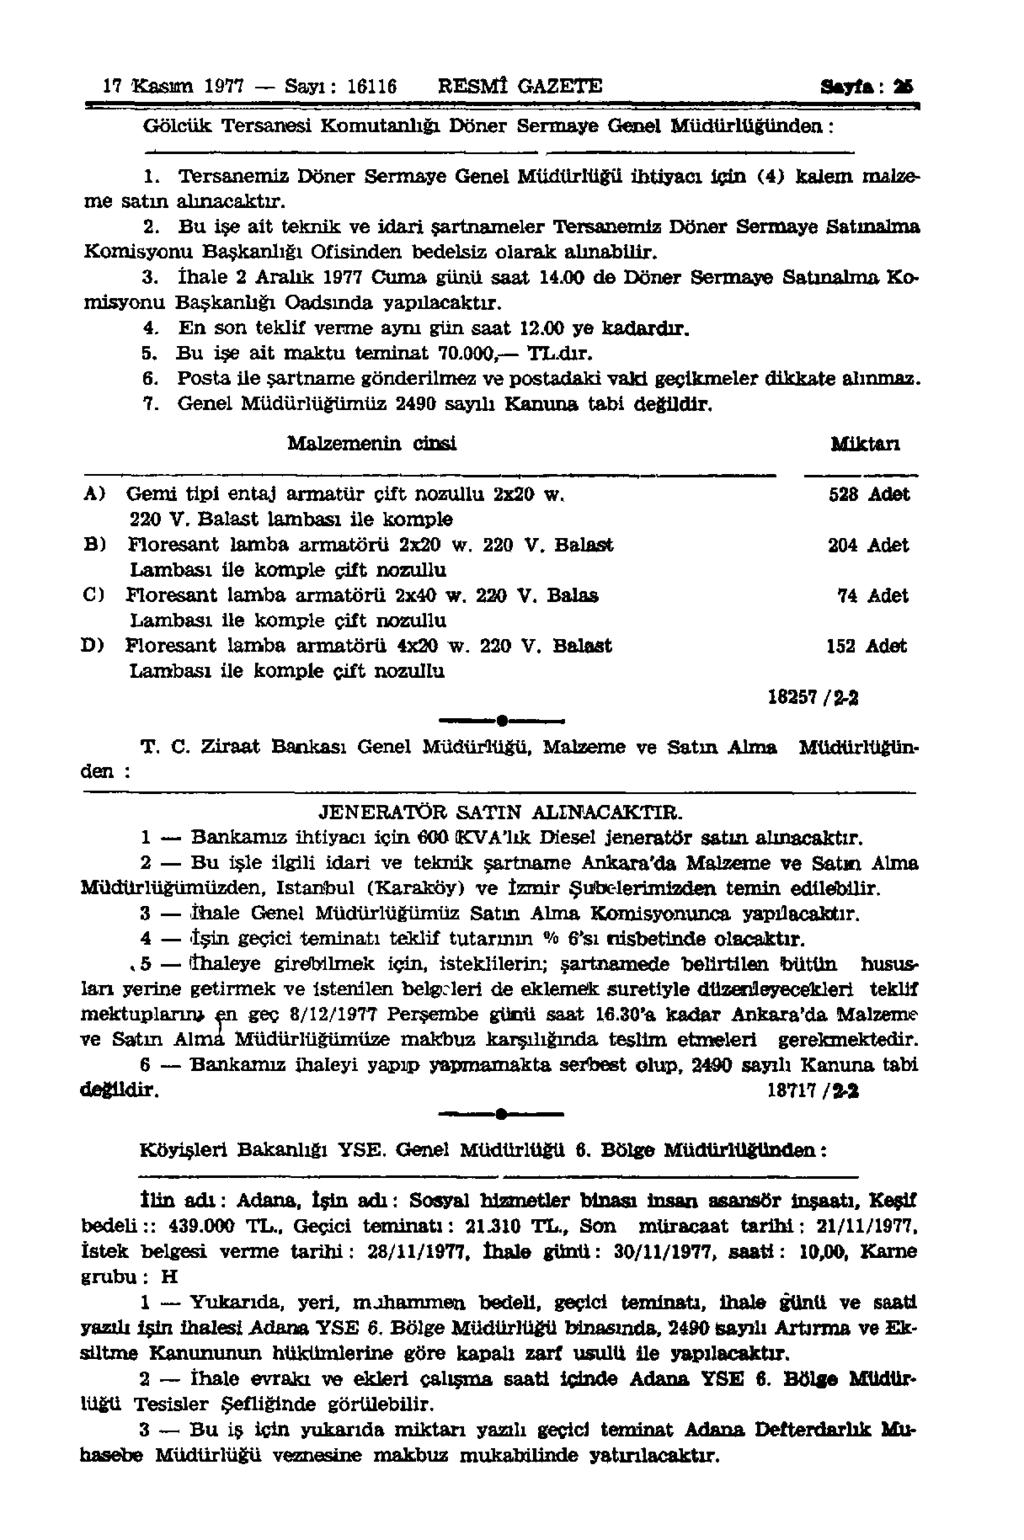 17 Kasım 1977 Sayı: 16116 RESMÎ GAZETE Sayfa: 36 Gölcük Tersanesi Komutanlığı Döner Sermaye Genel Müdürlüğünden: 1.